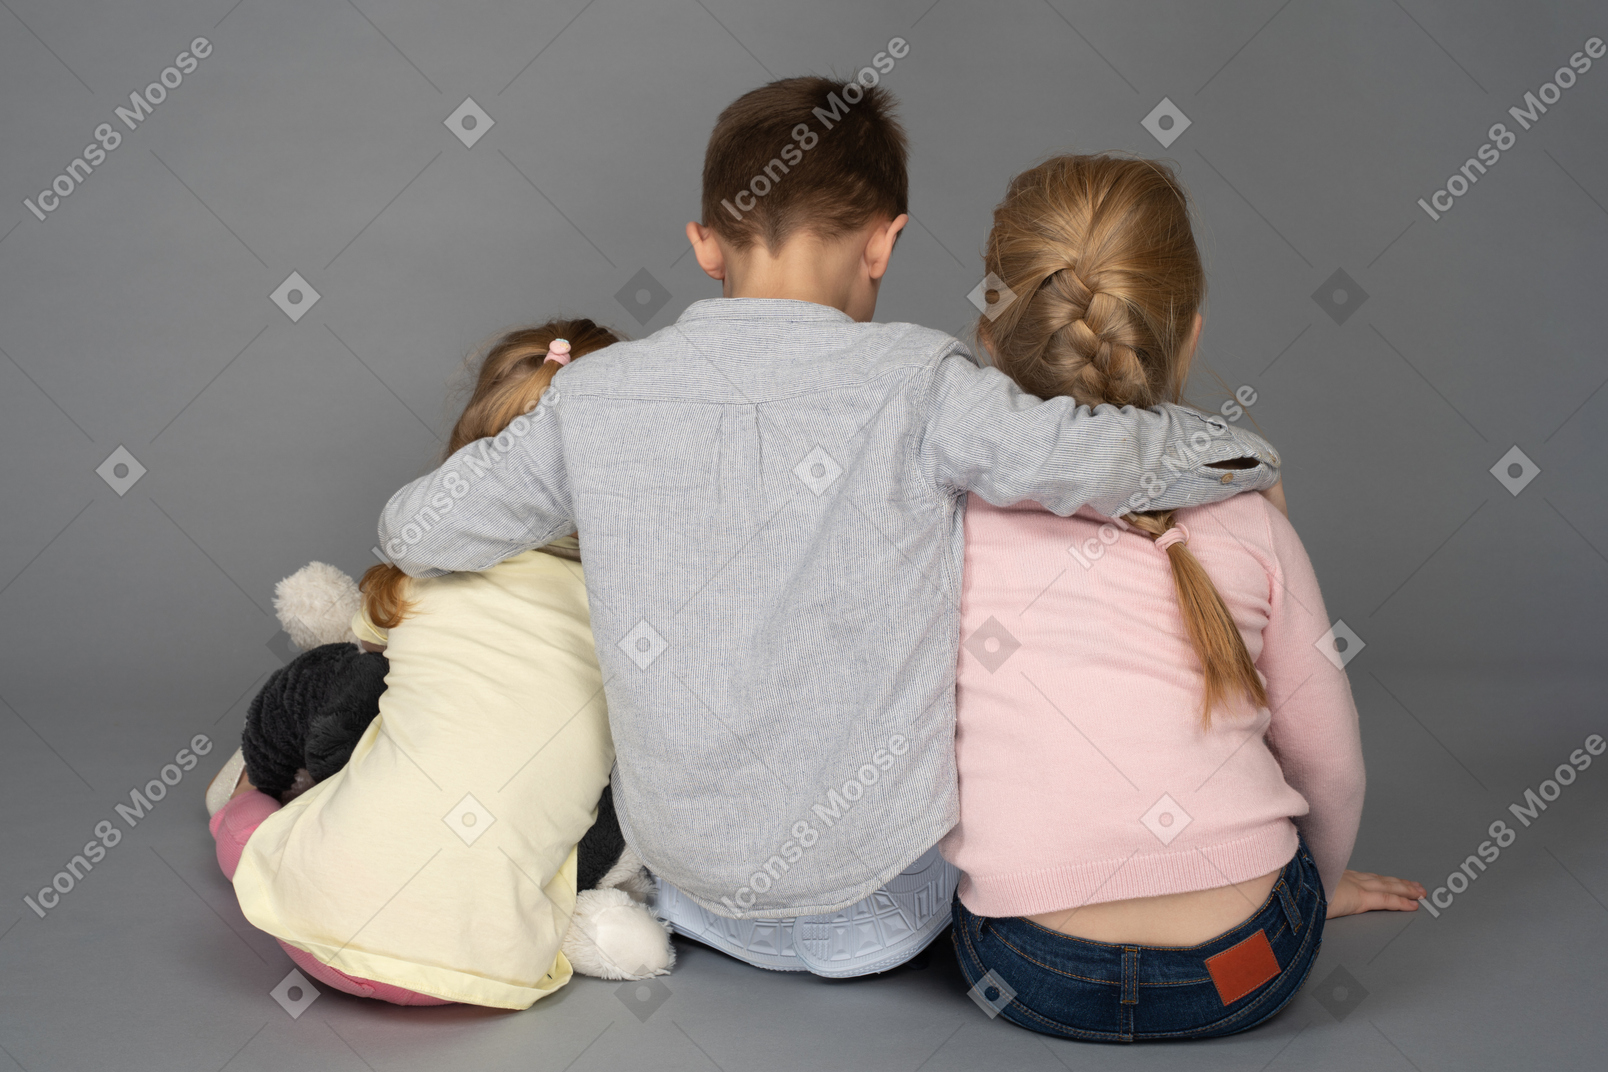 Niño abrazando a dos niñas de espaldas a la cámara